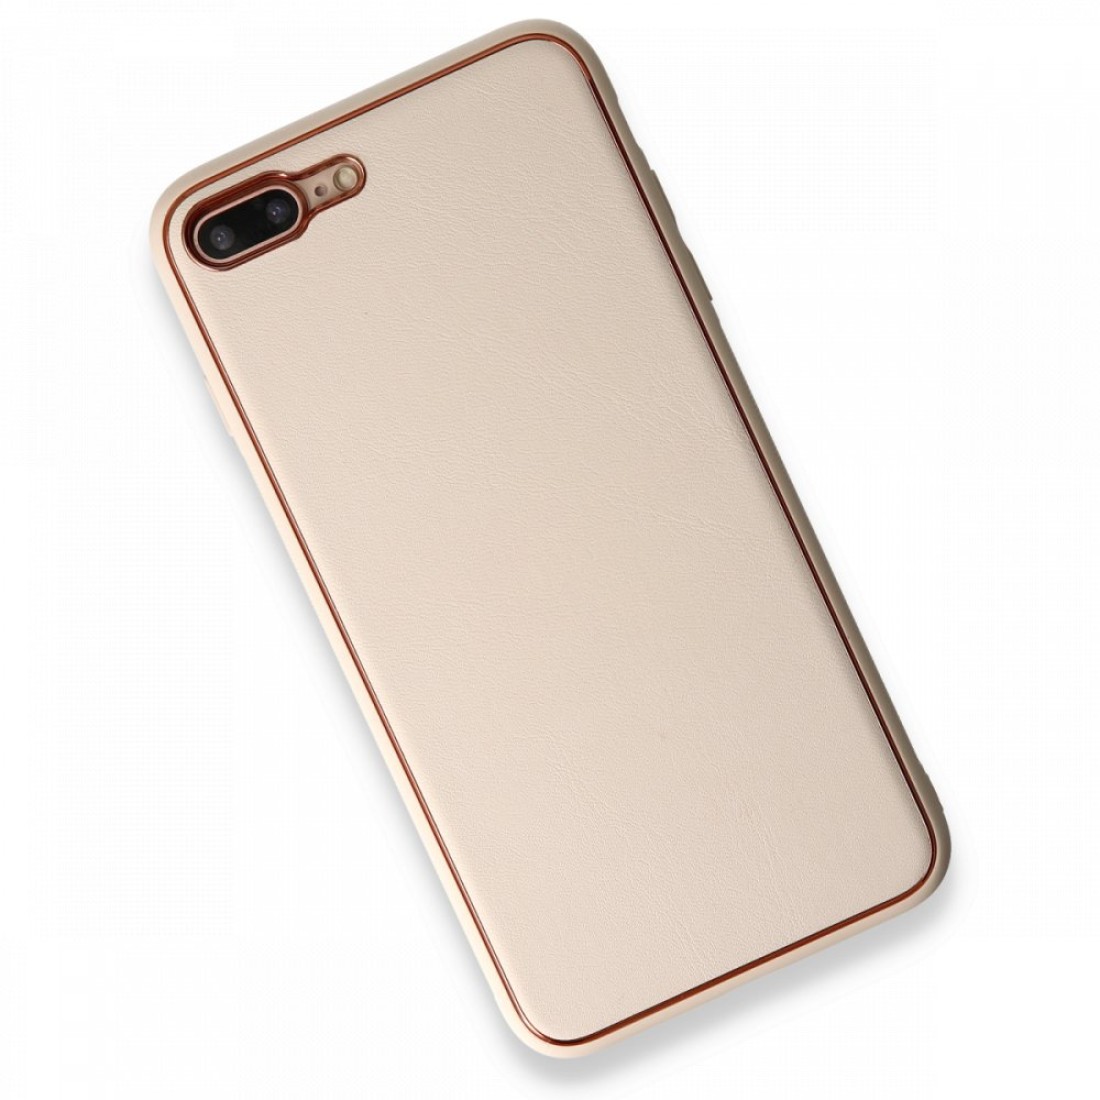 Apple iPhone 7 Plus Kılıf Coco Deri Silikon Kapak - Gold